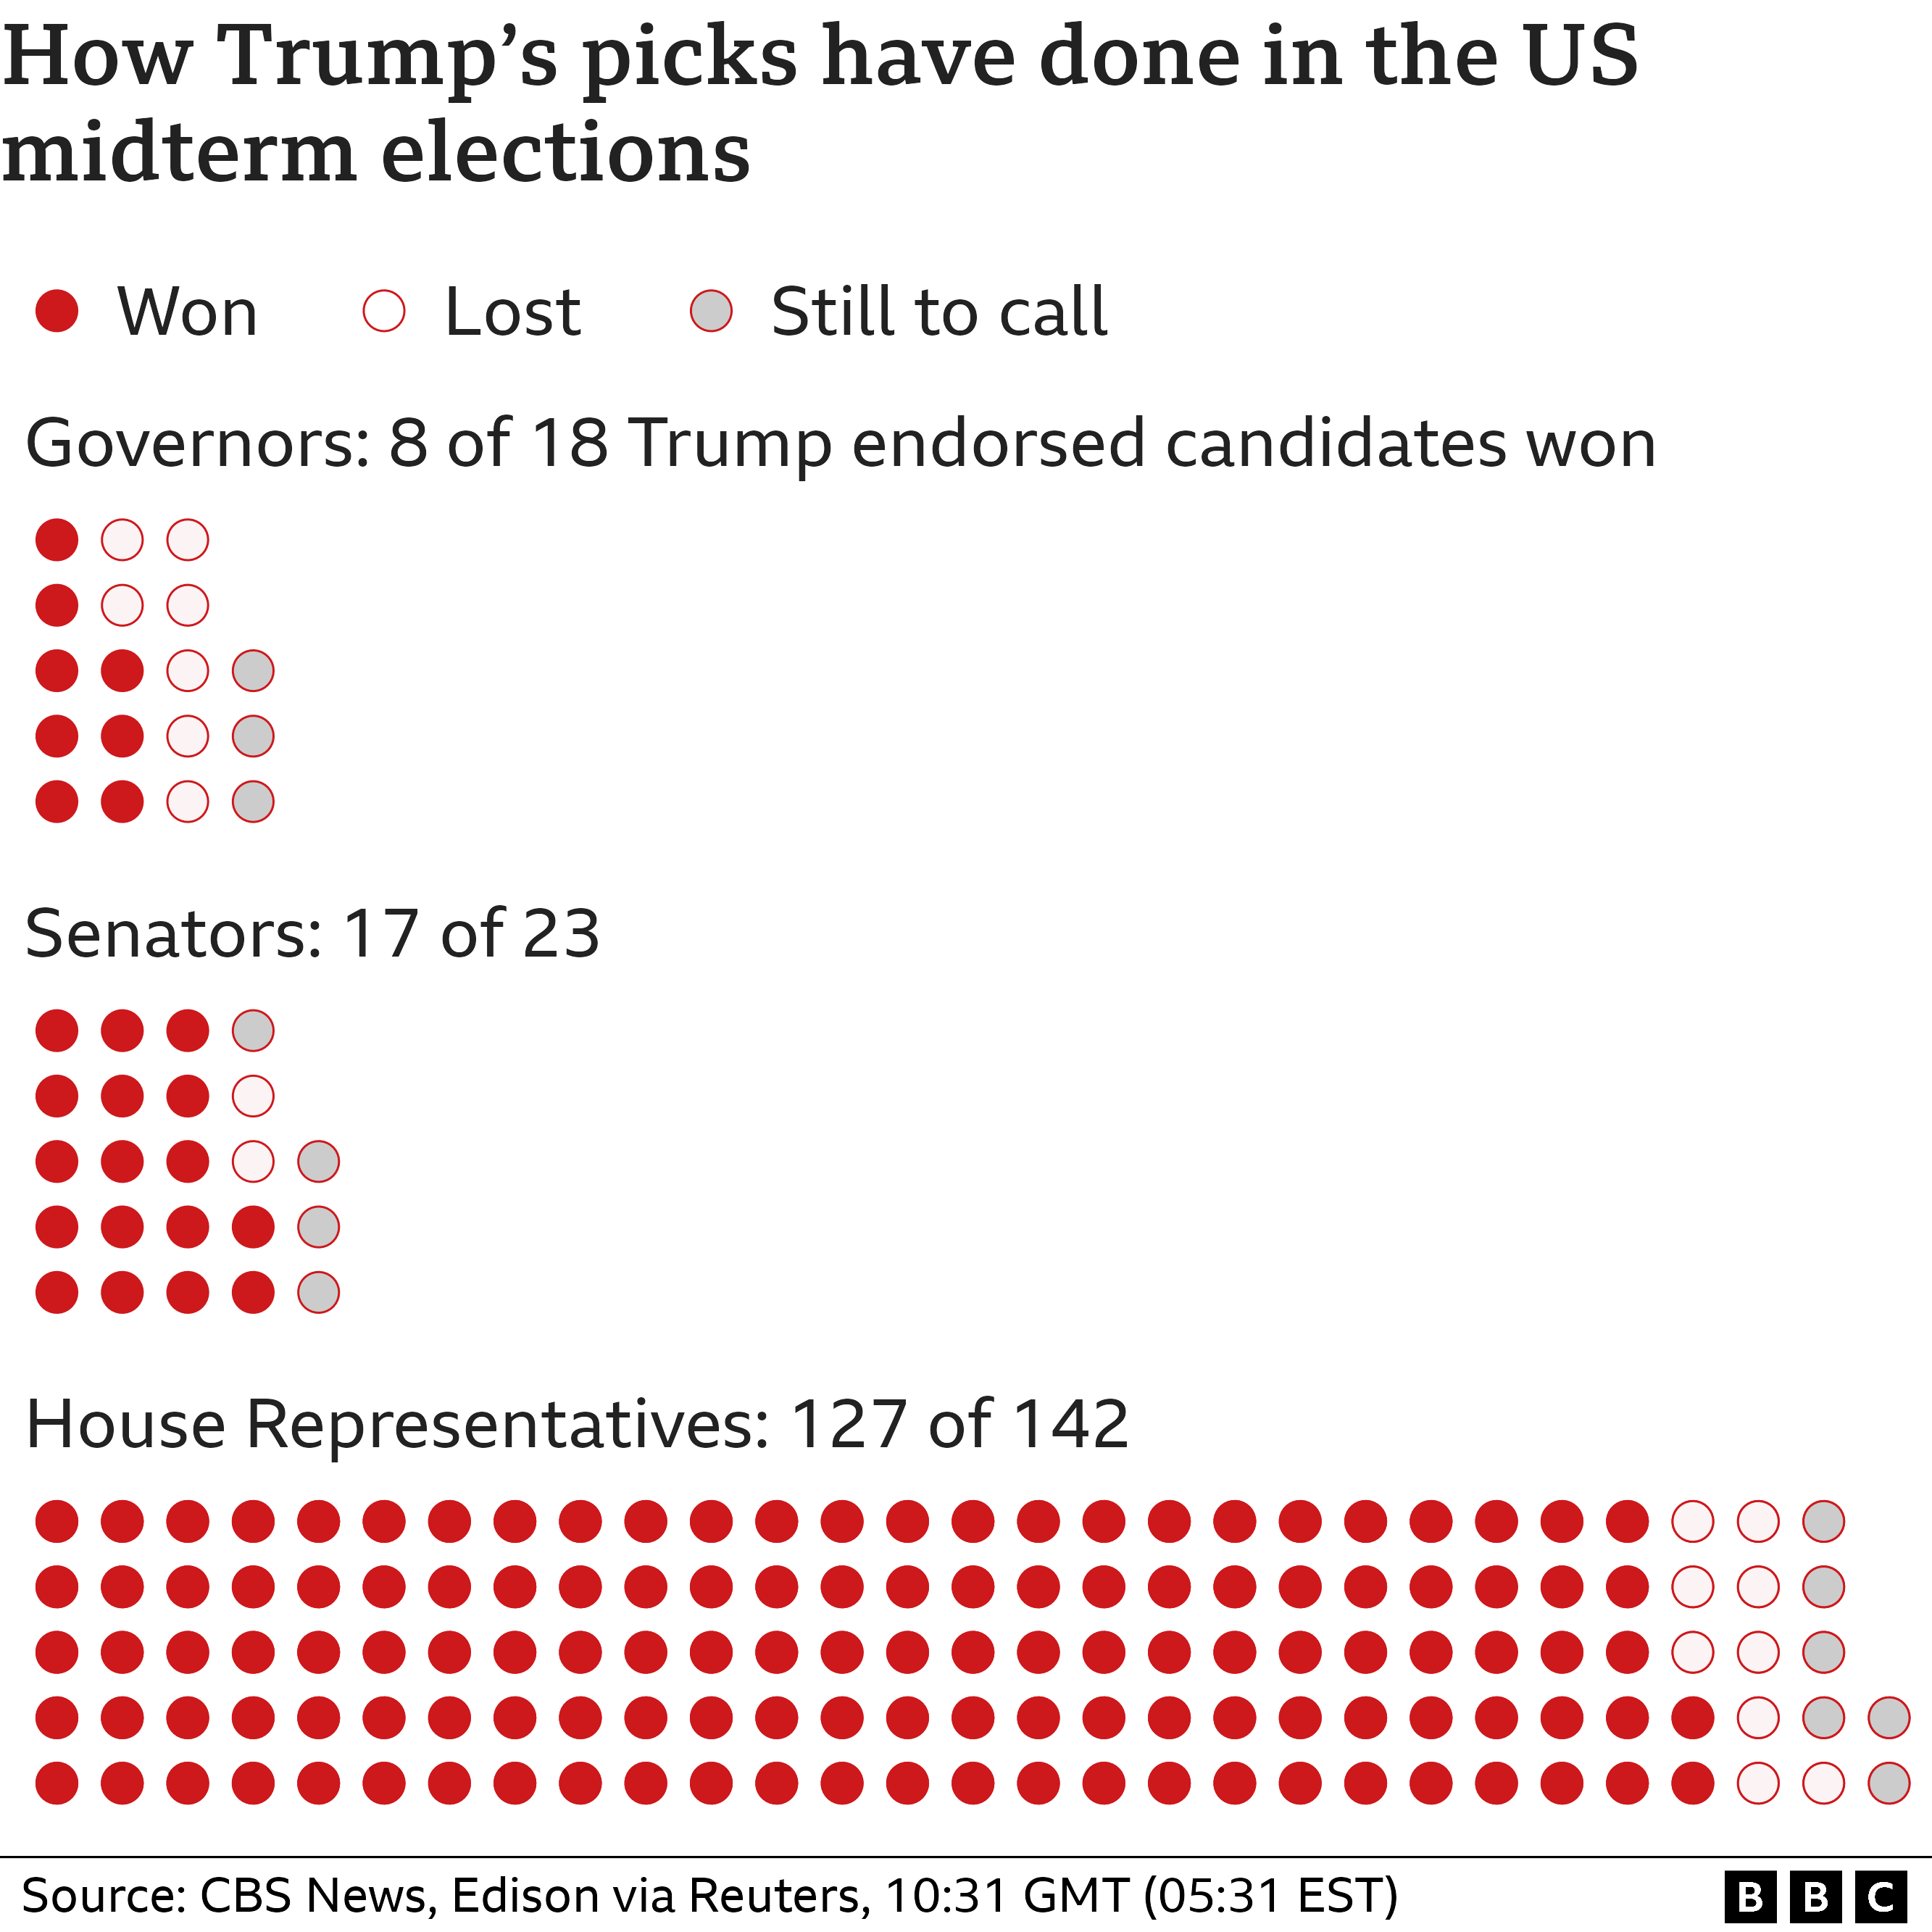 8 из 18 губернаторов, 17 из 23 сенаторов и 127 из 142 представителей Палаты представителей которые поддержал Трамп, получили свои места